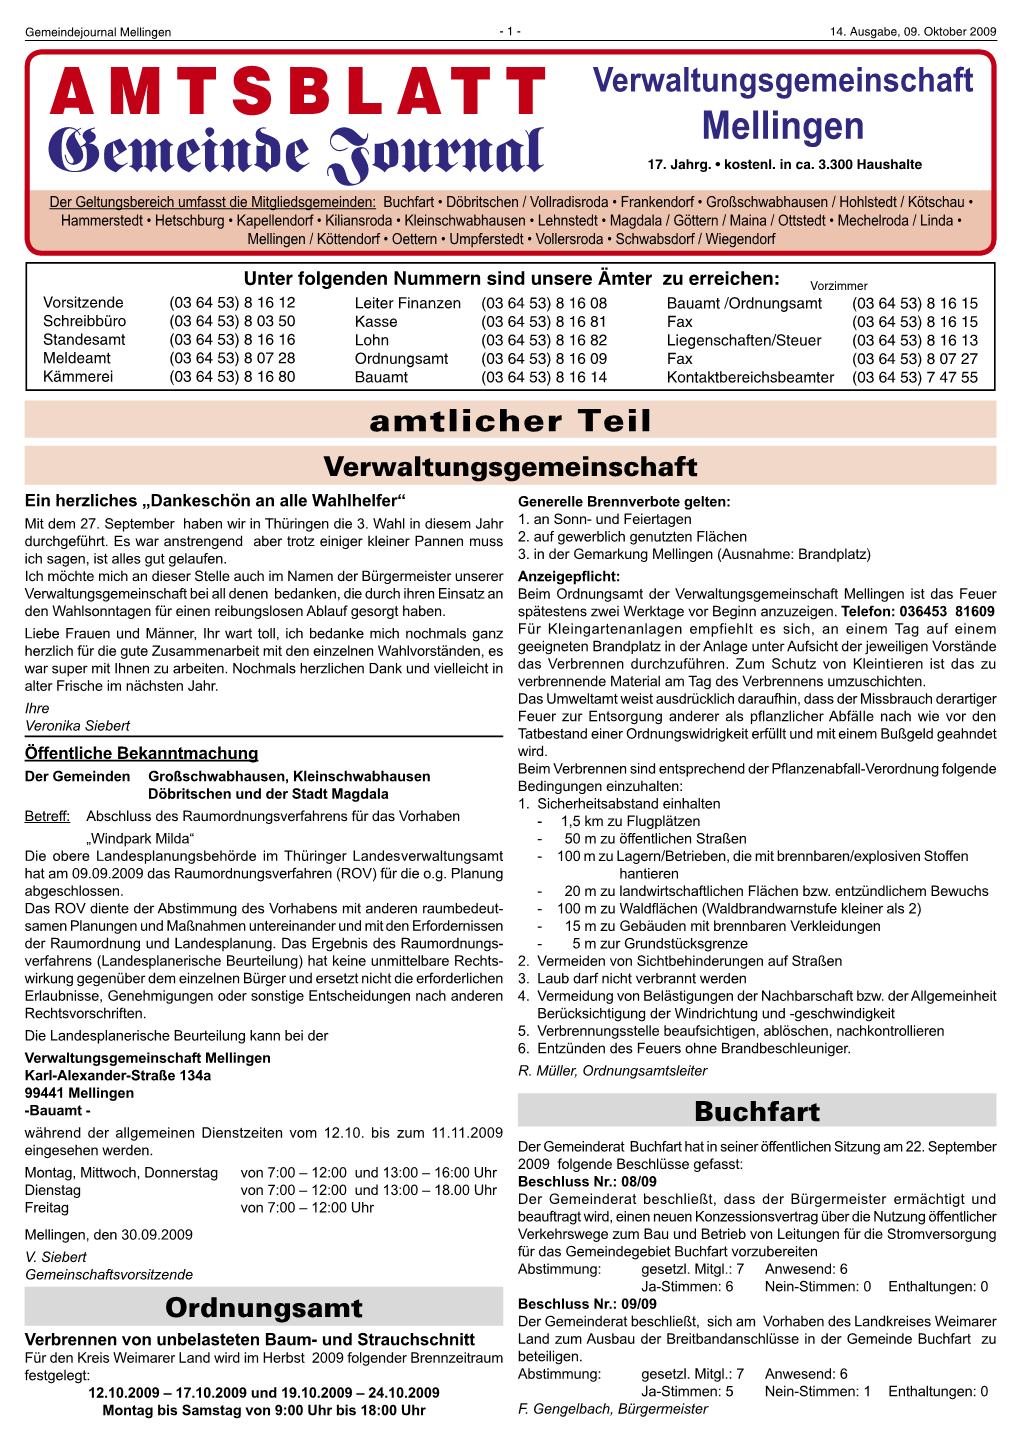 Amtsblatt 14-09.Indd